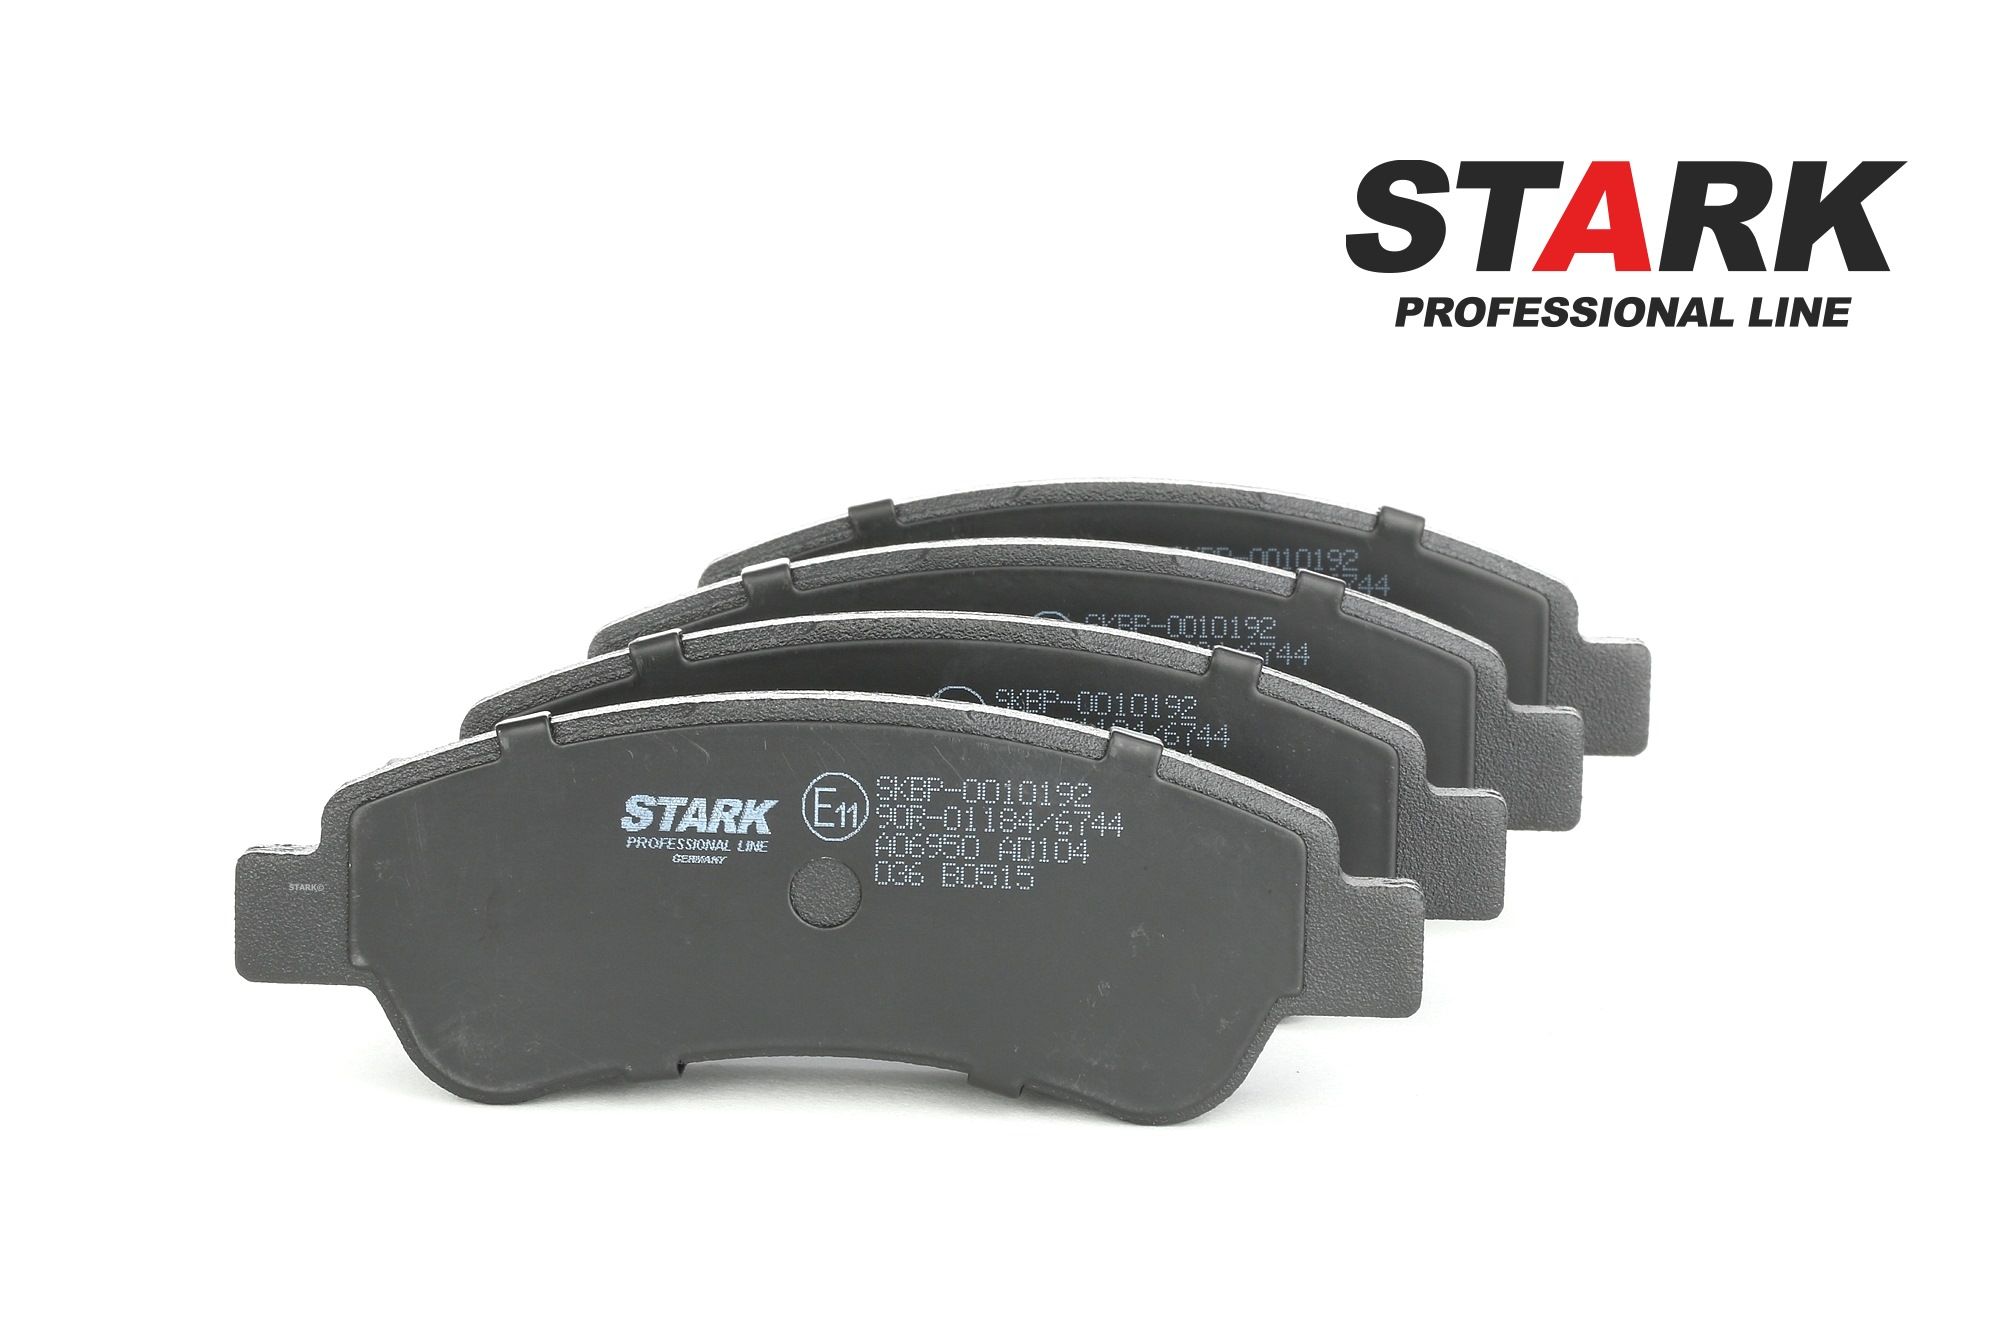 STARK Pastiglie freno Fiat SKBP-0010192 di qualità originale